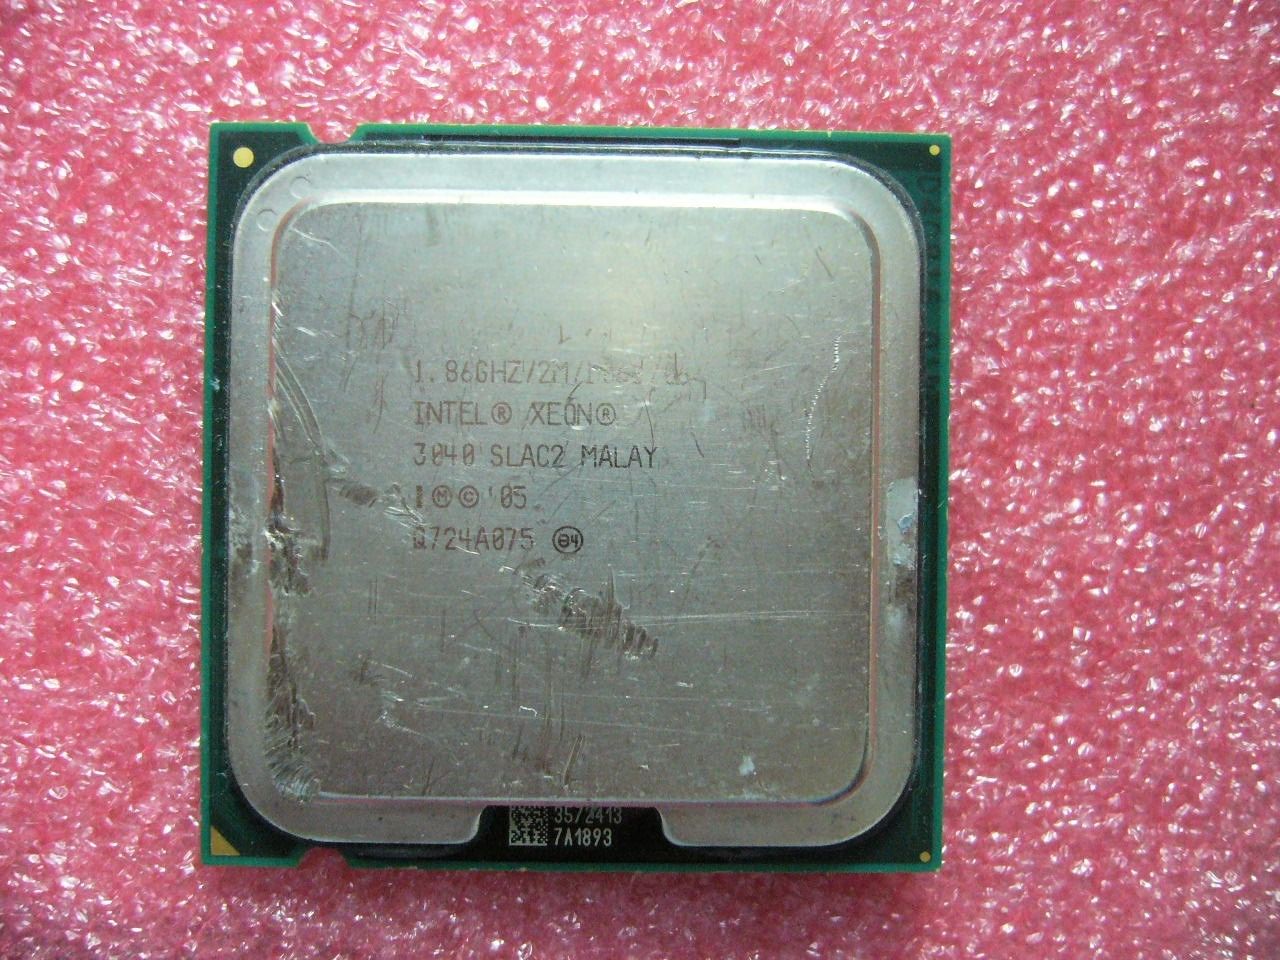 QTY 1x INTEL Xeon Dual Cores 3040 CPU 1.86GHz 2MB/1066Mhz LGA775 SLAC2